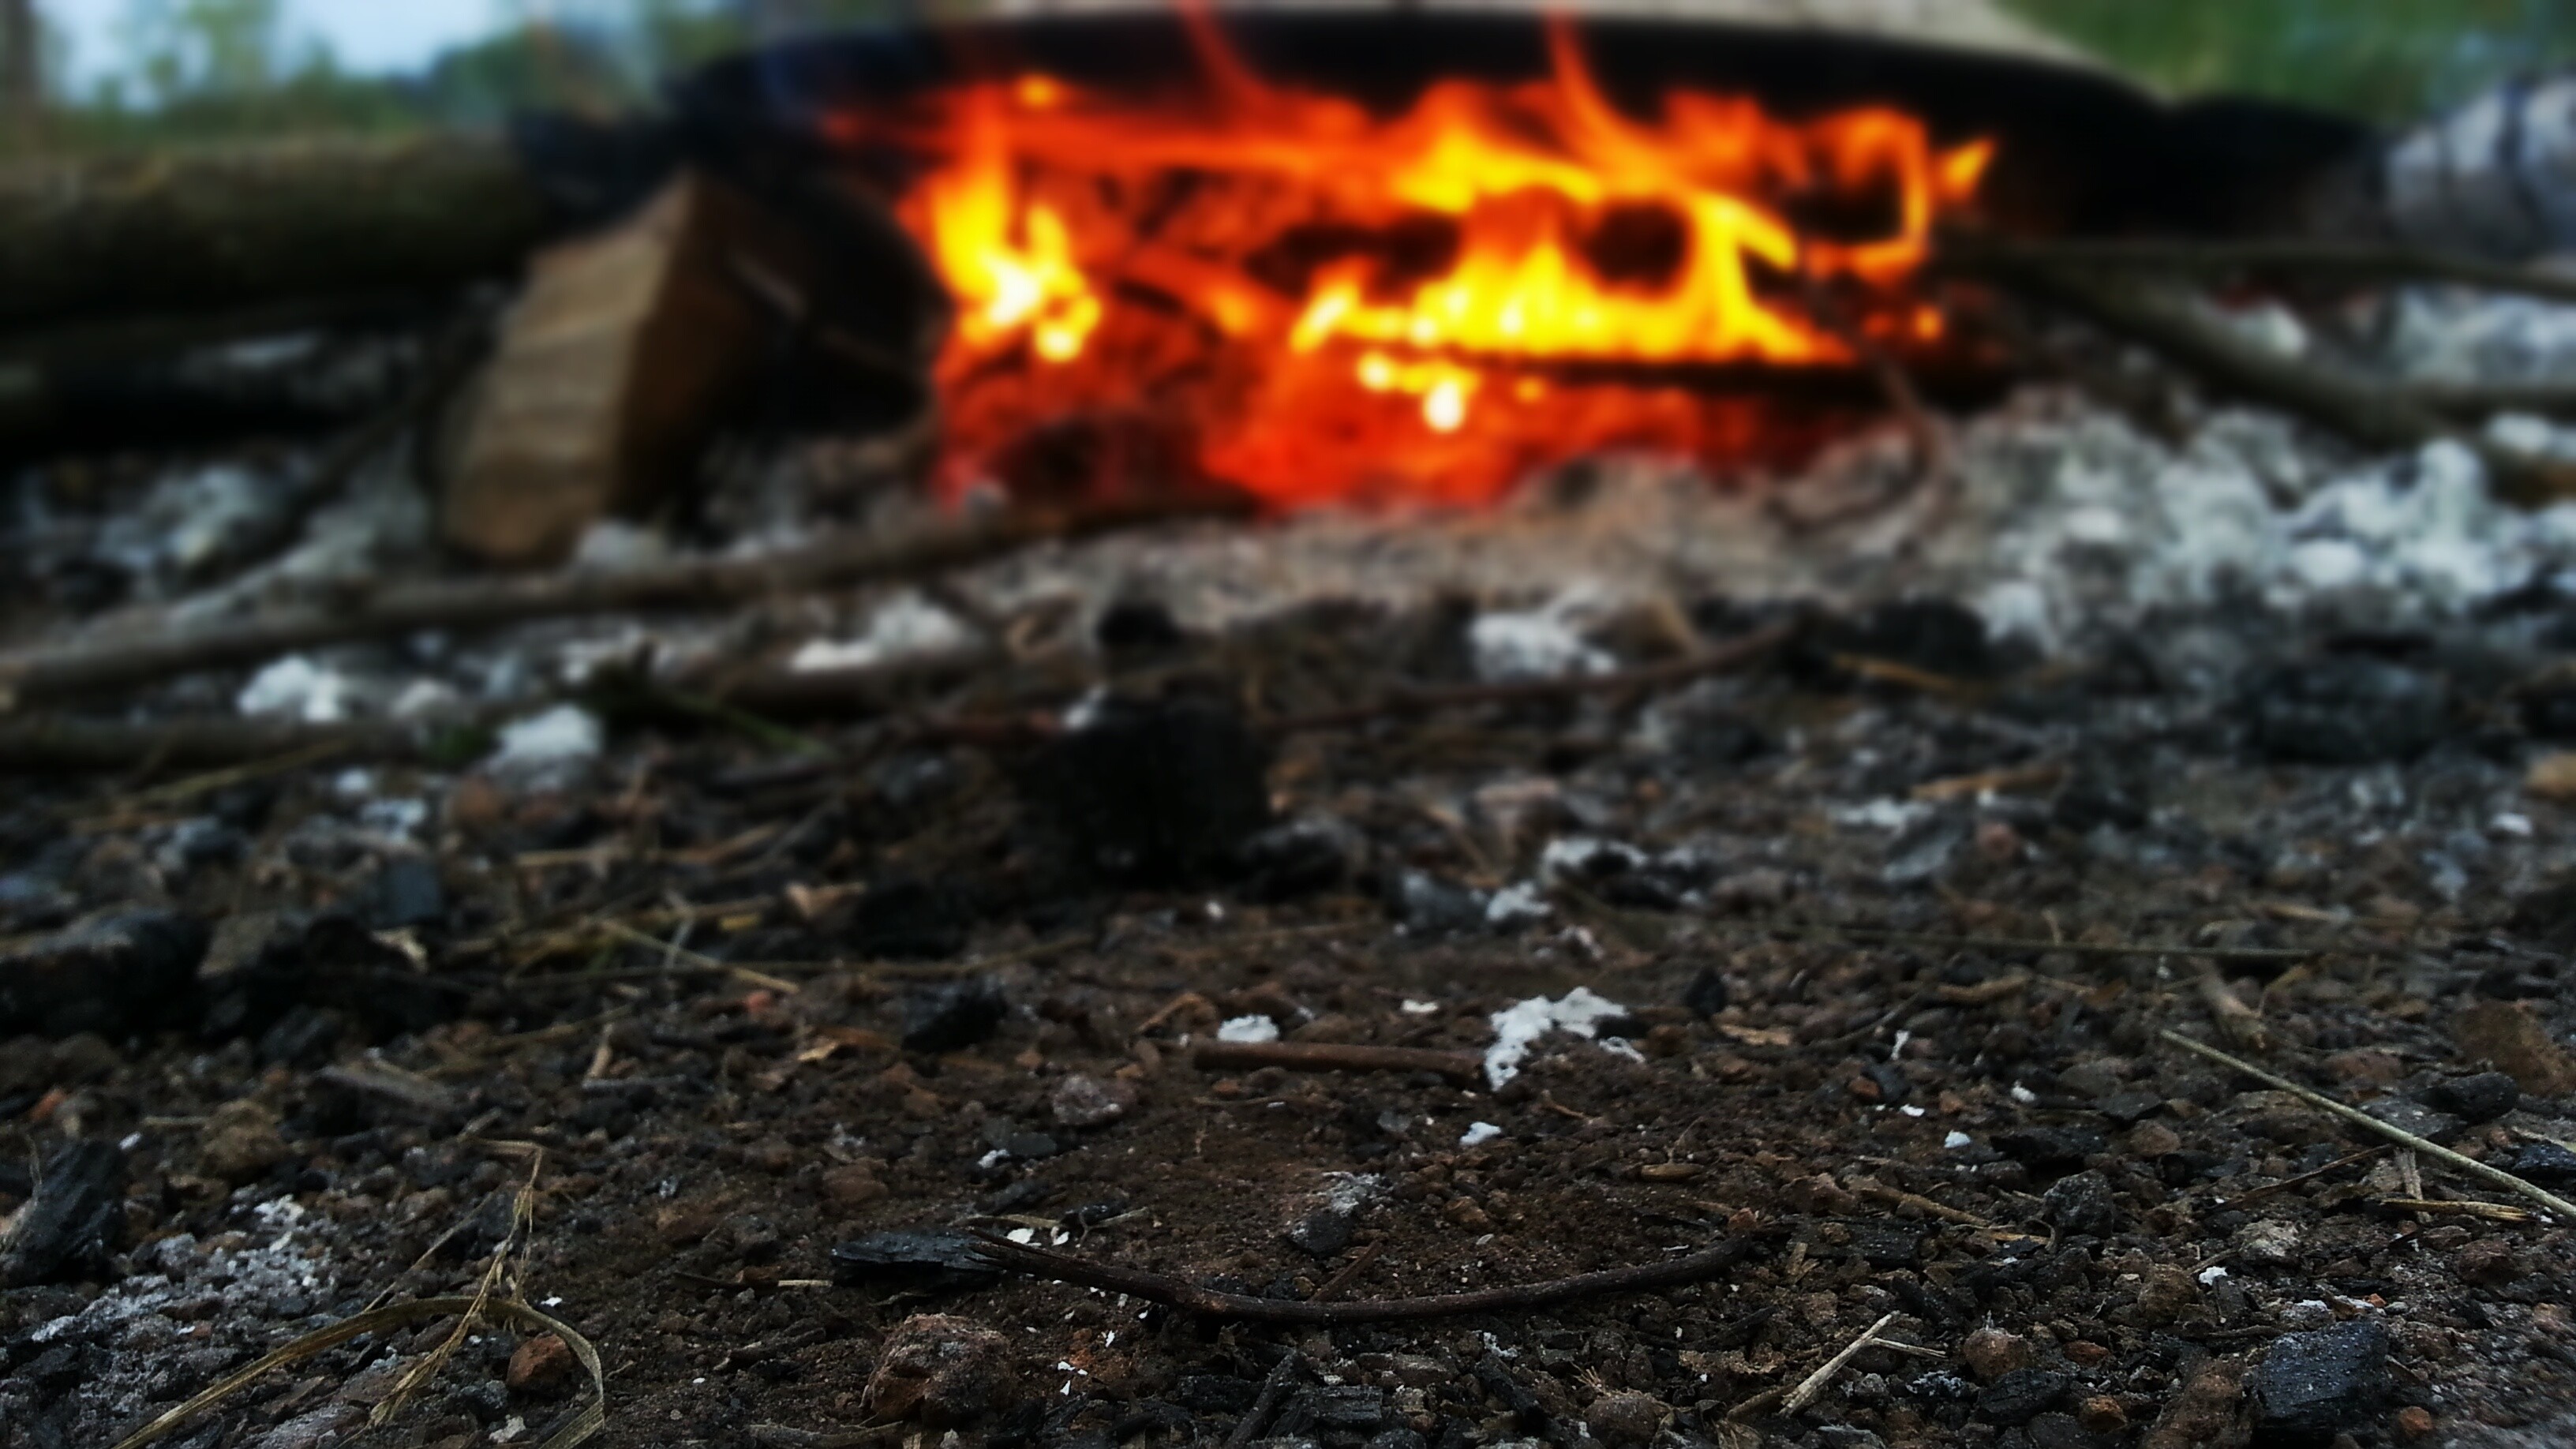 General 3264x1836 dirt outdoors fire campfire